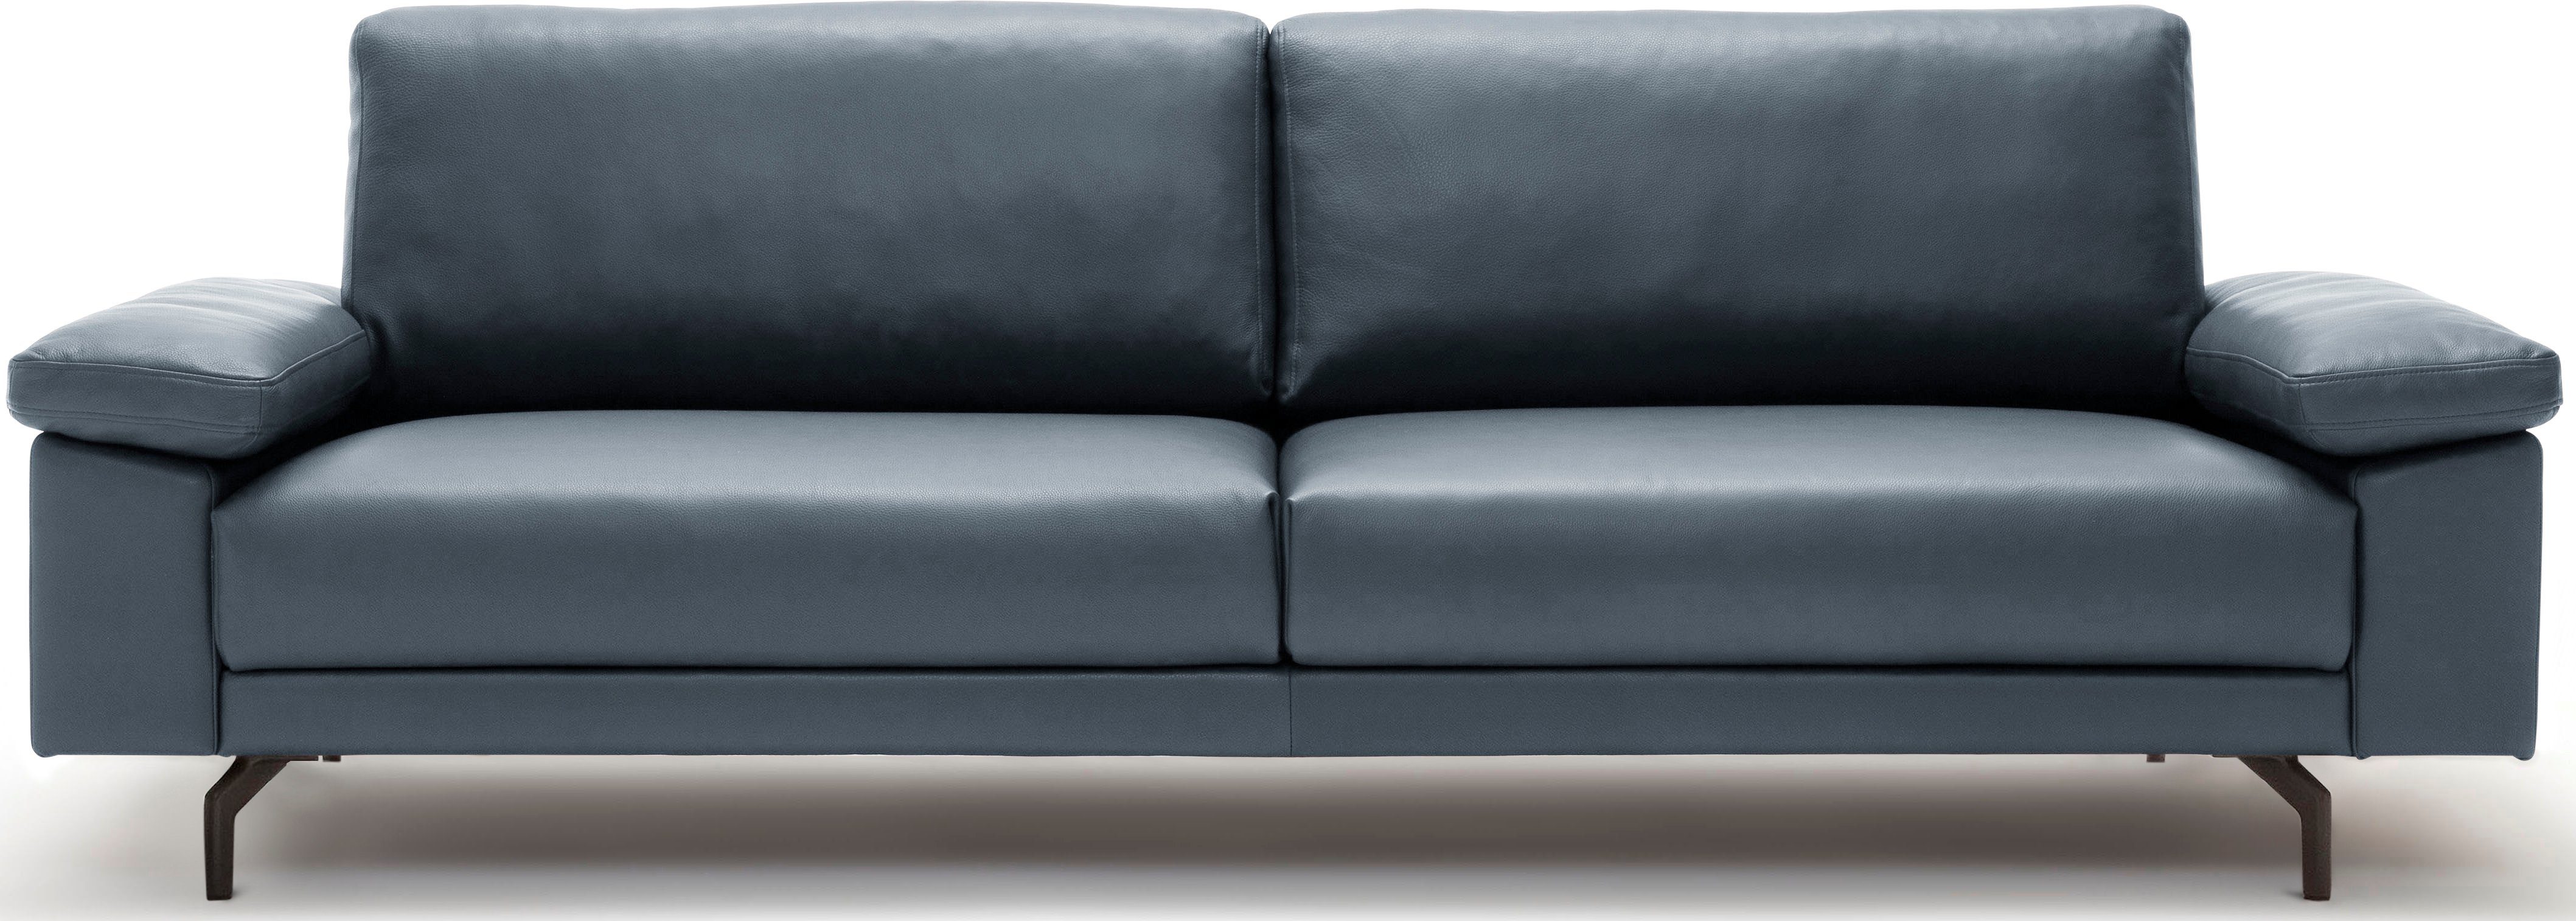 2,5-Sitzer hs.450 hülsta sofa